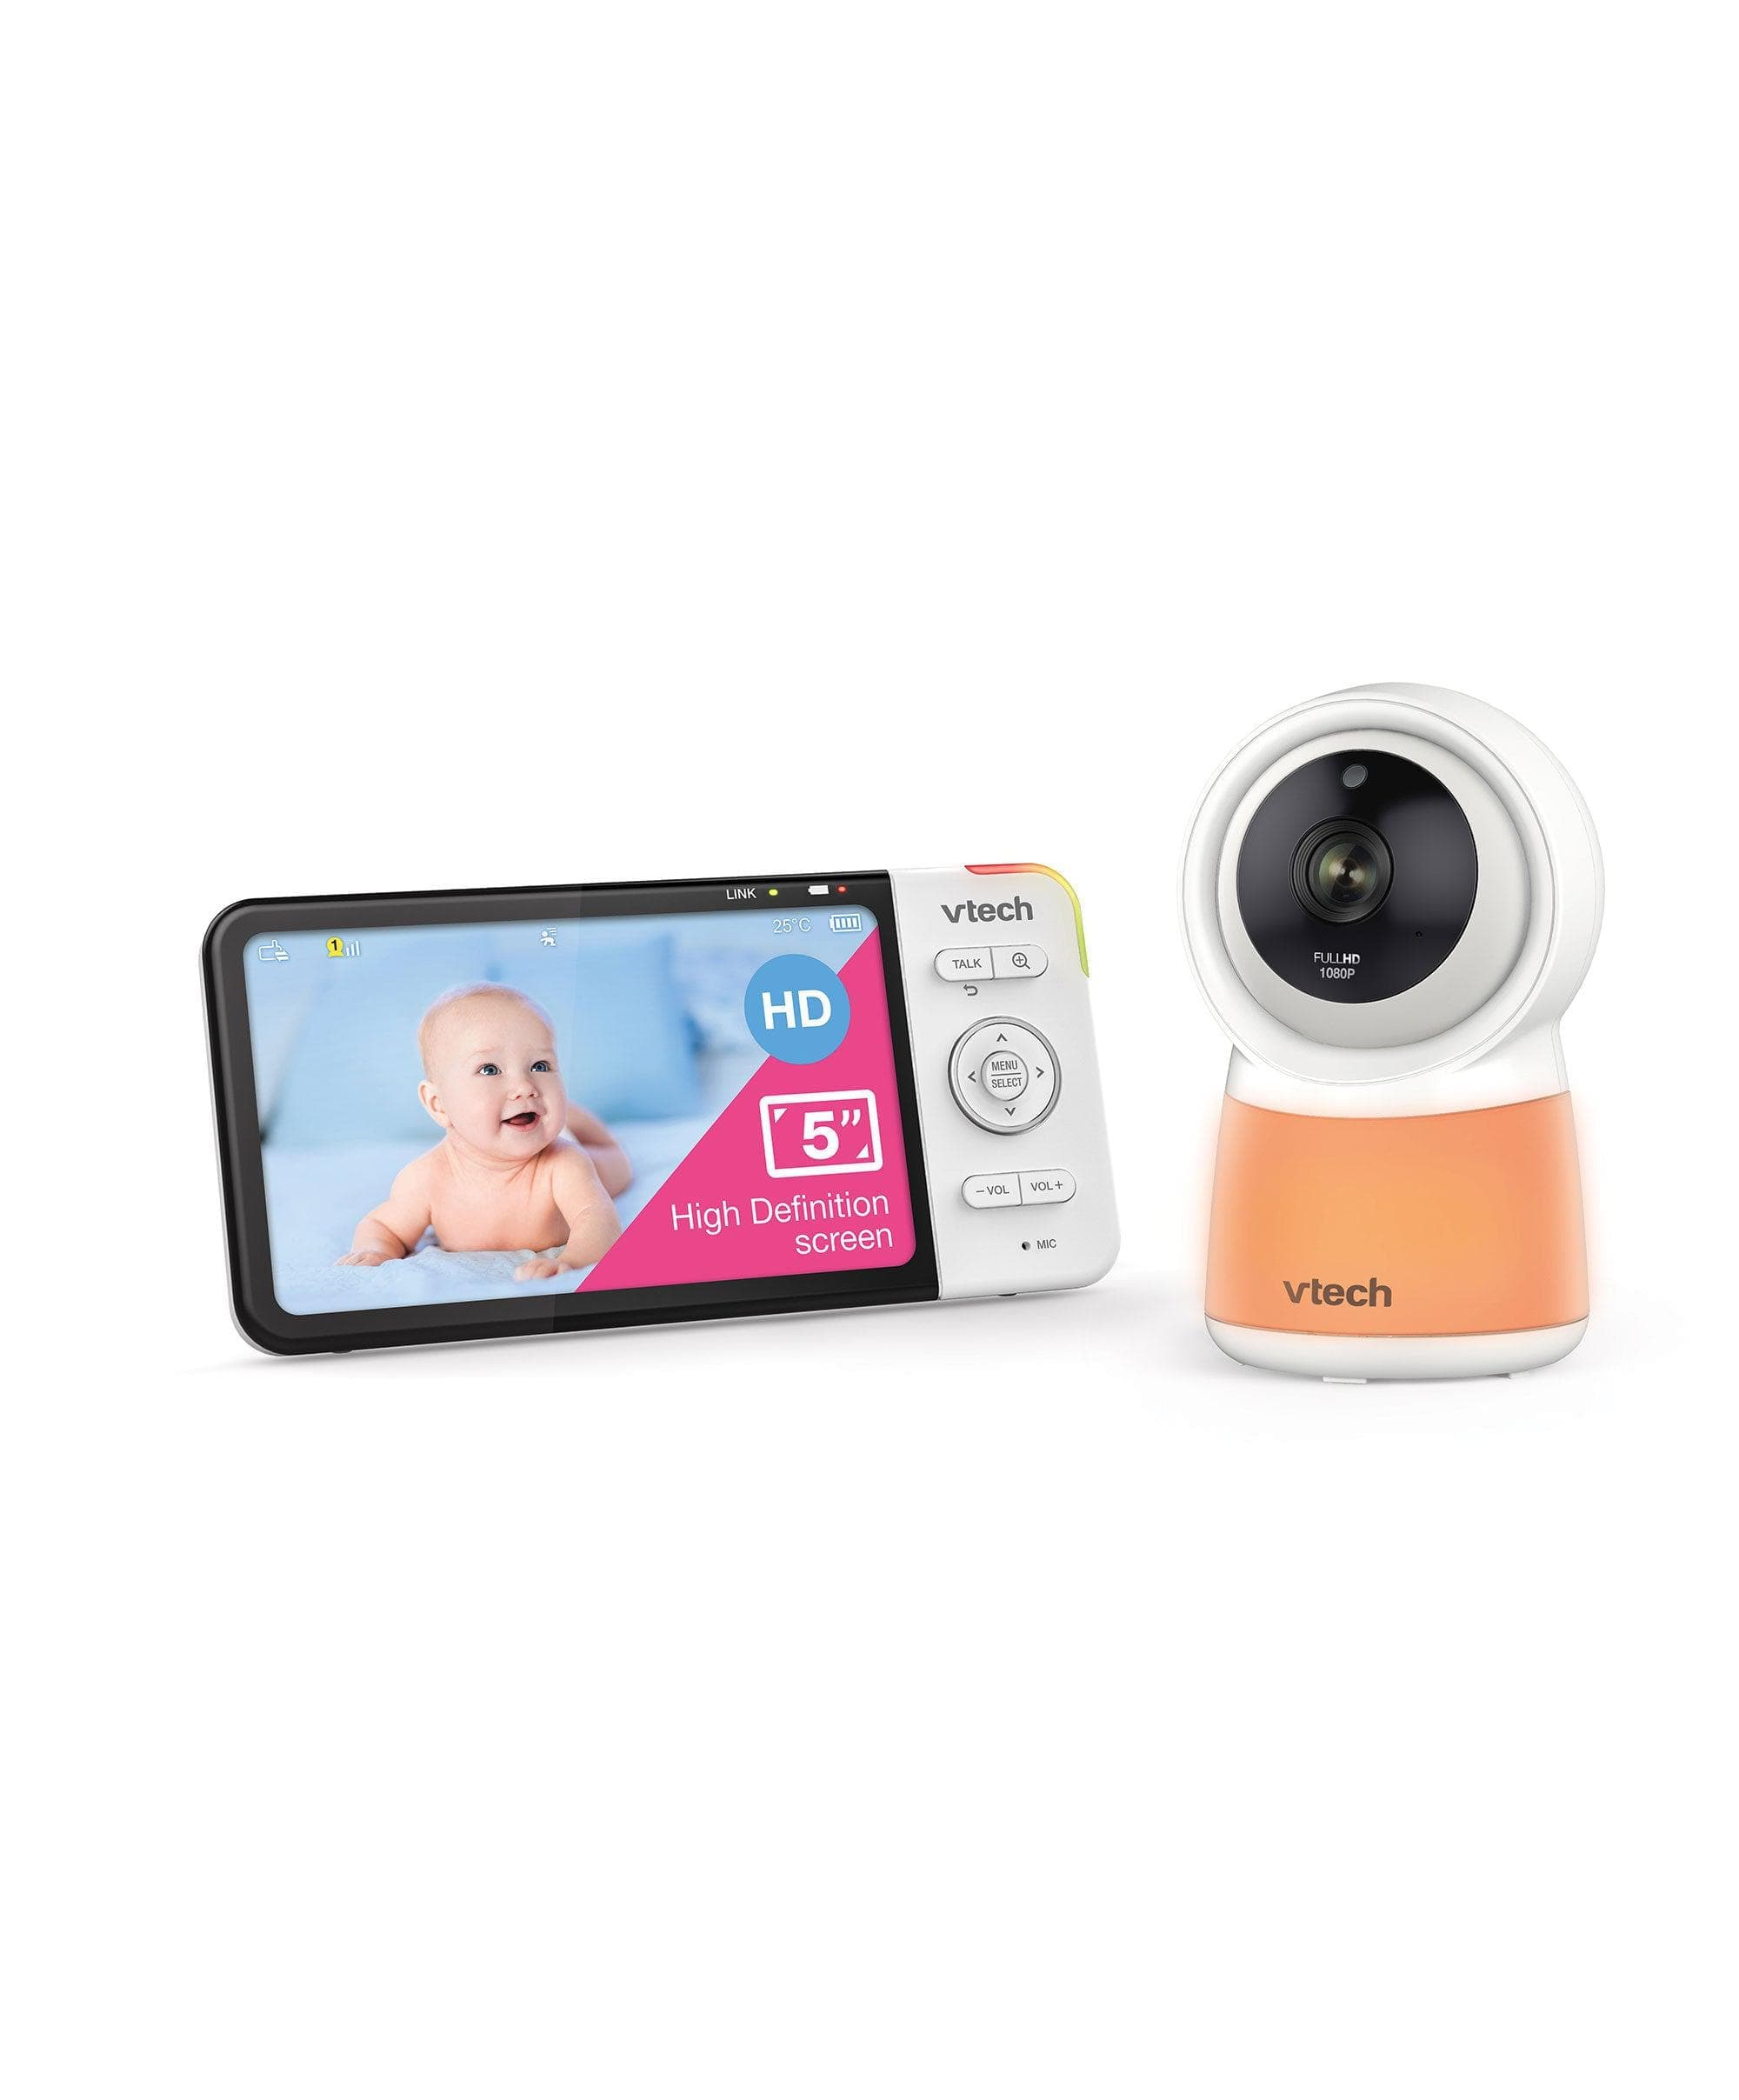 Smart Baby Monitor Cameras | Baby Safety – Mamas & Papas UK